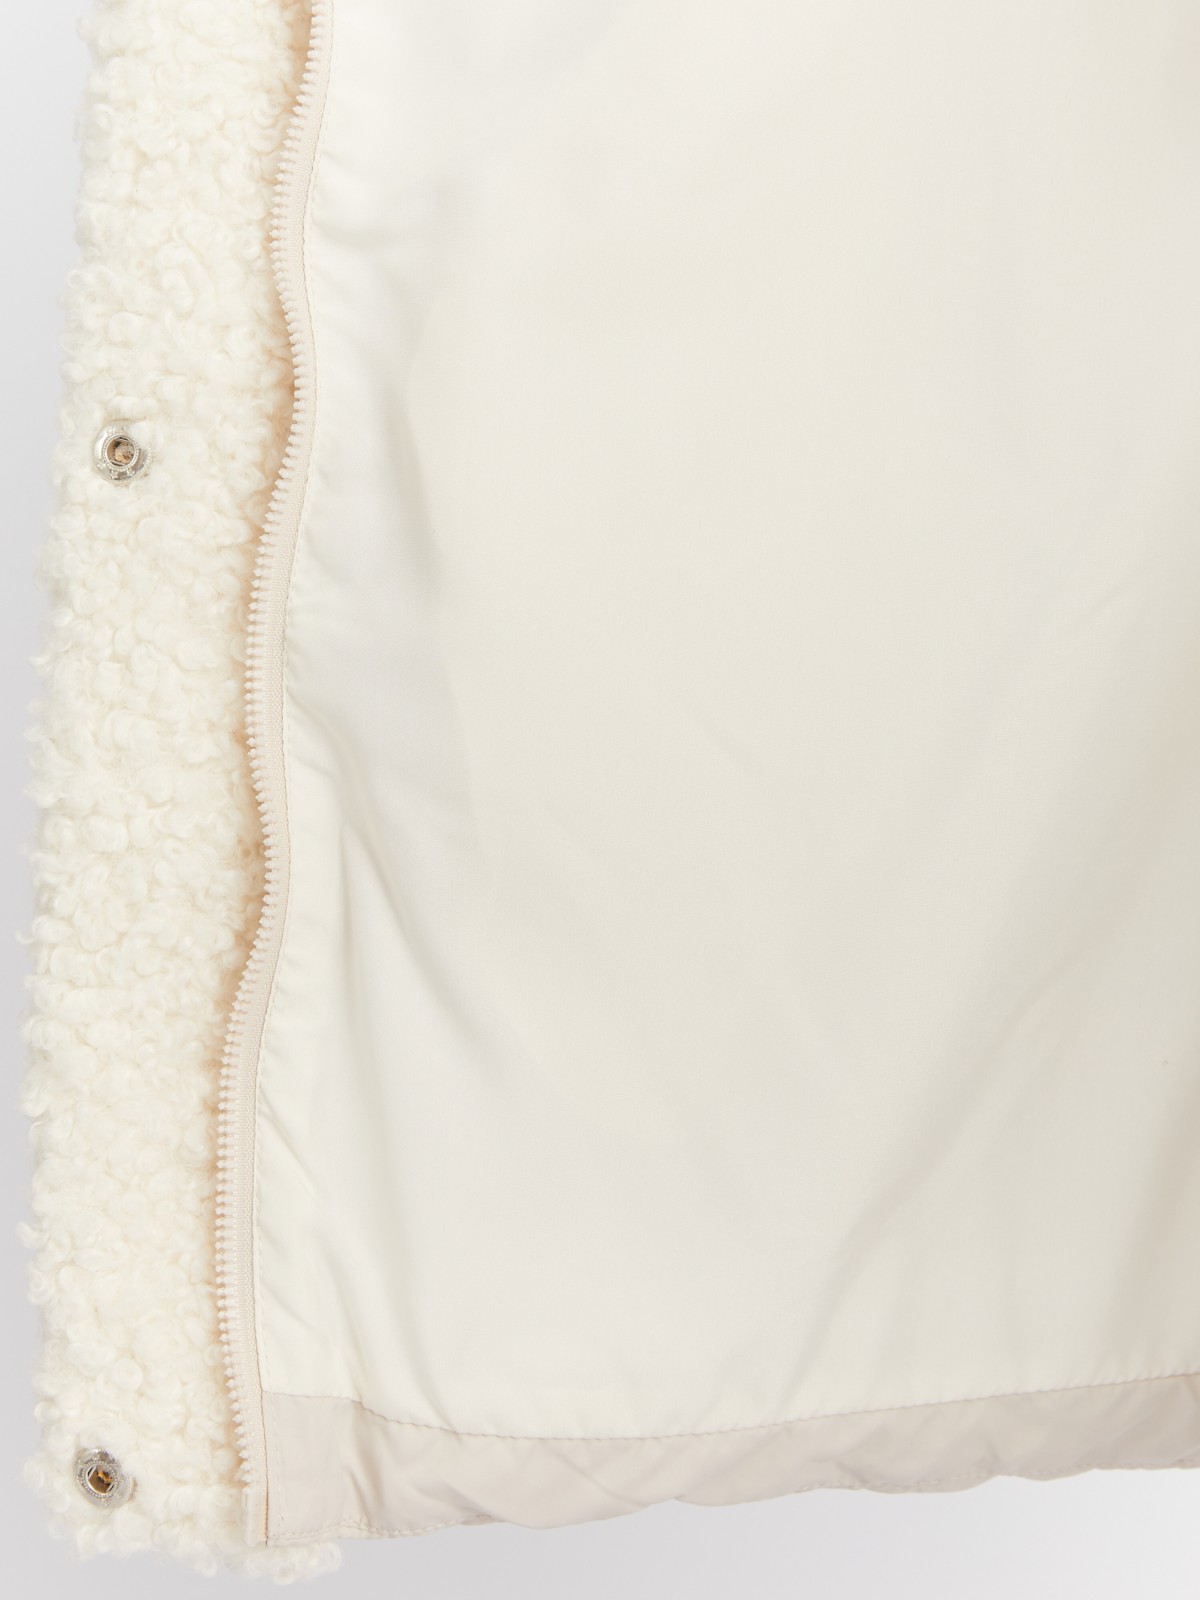 Тёплая стёганая куртка с воротником-стойкой и отделкой из экомеха zolla 023425102044, цвет молоко, размер XS - фото 5